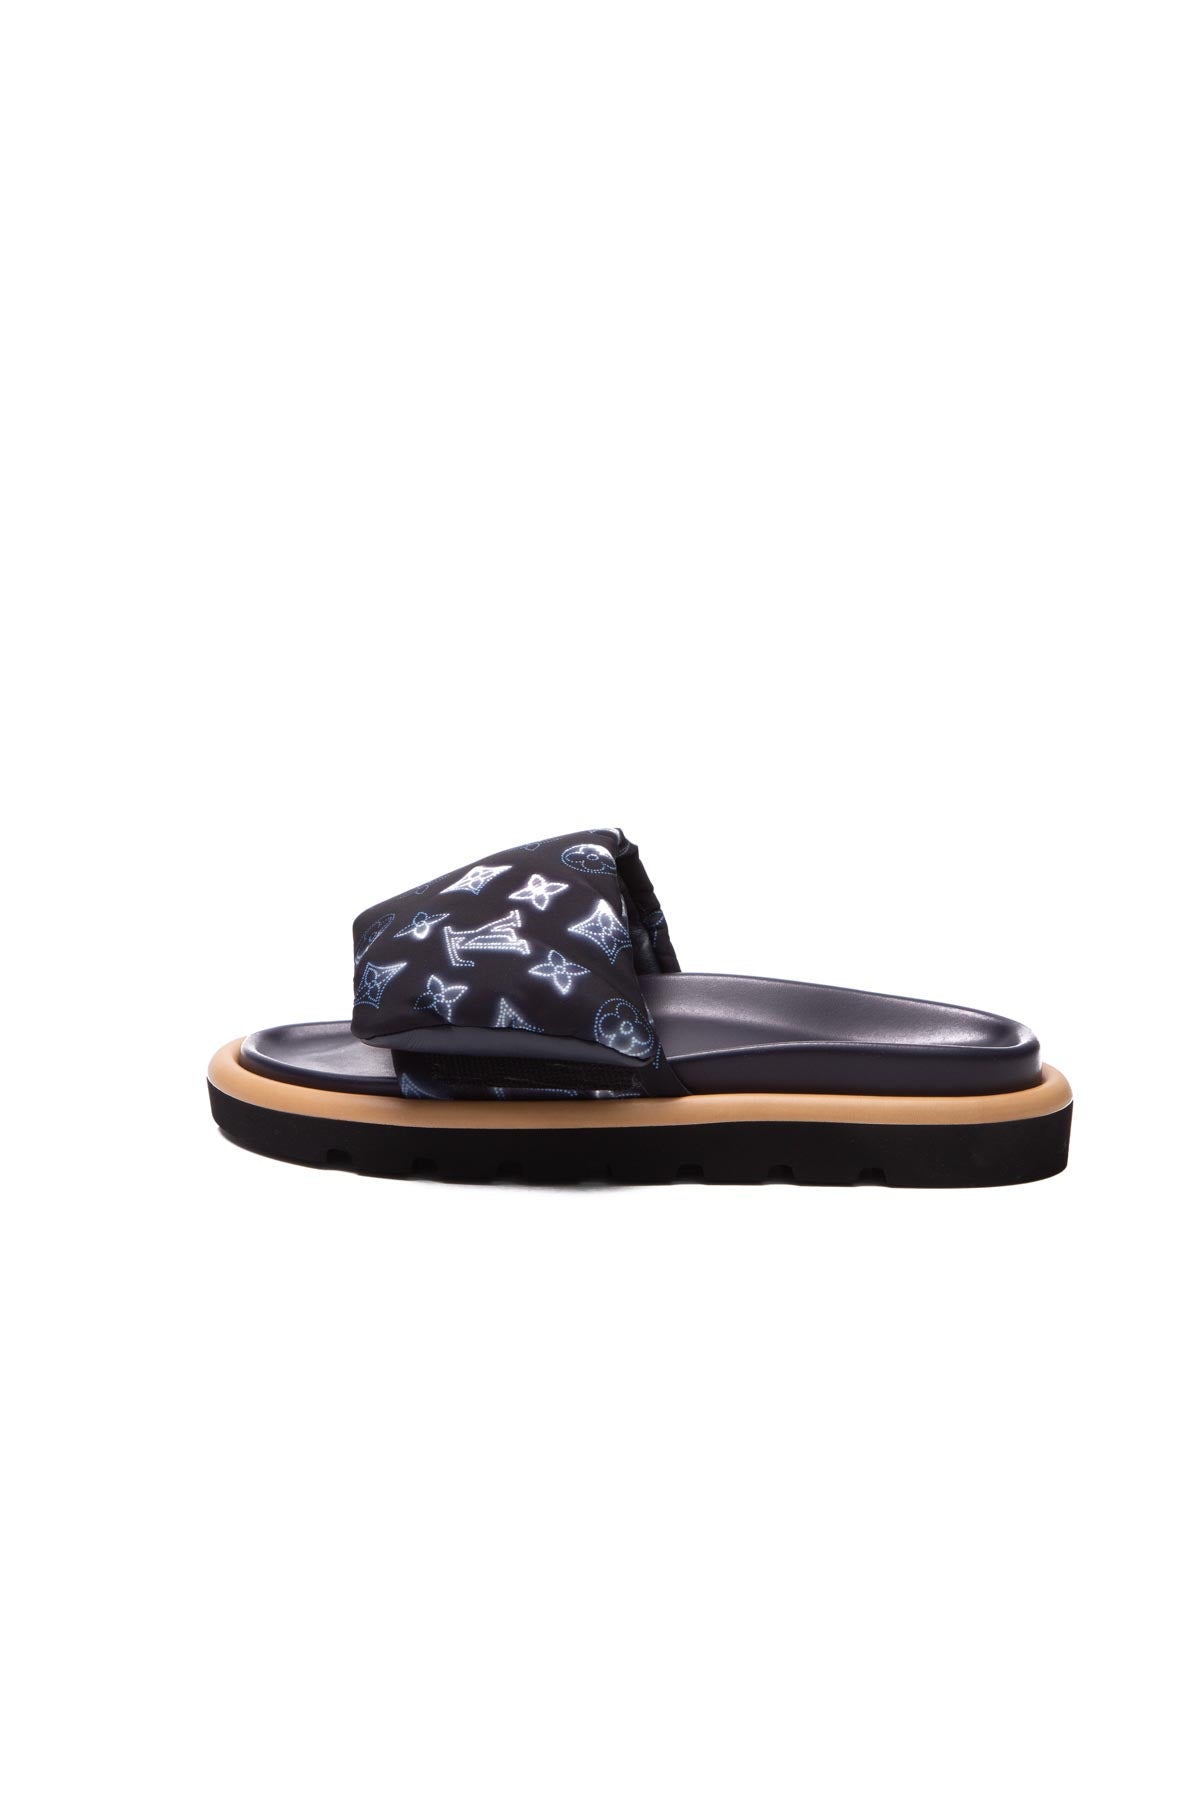 Mink sandals Louis Vuitton White size 10 US in Mink - 26165551